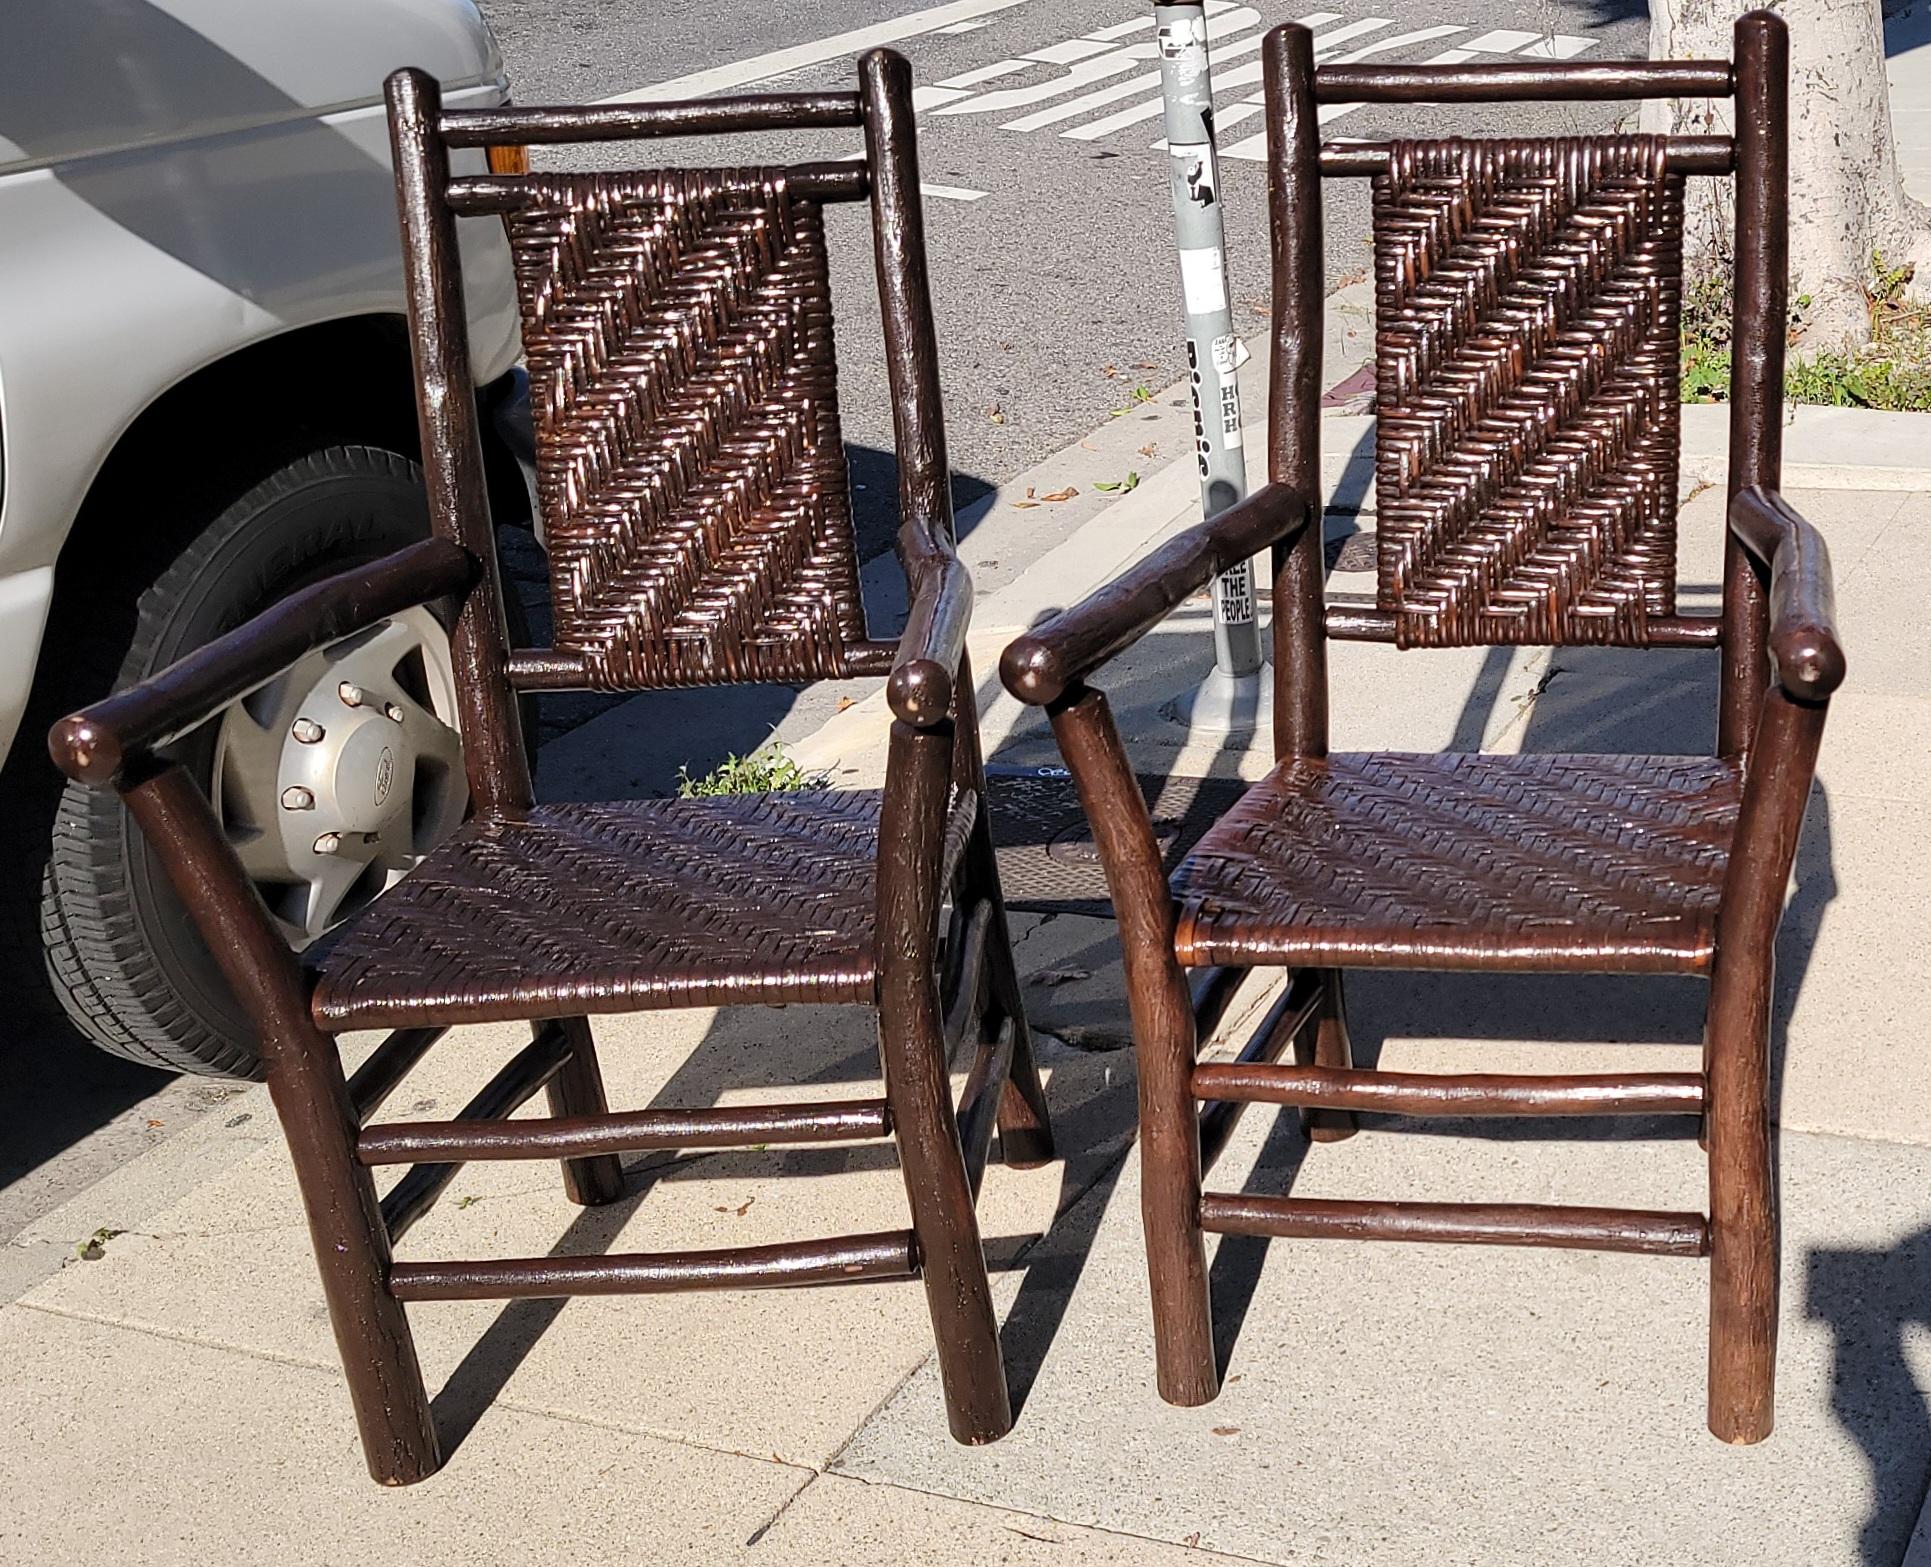 Alte Hickory-Sessel aus den 1930er Jahren in dunkel lackierter Ausführung. Der Zustand ist tadellos und sehr robust. Signiert Old Hickory Furniture Company aus Martinsville, Indiana. Wird als passendes Paar verkauft.